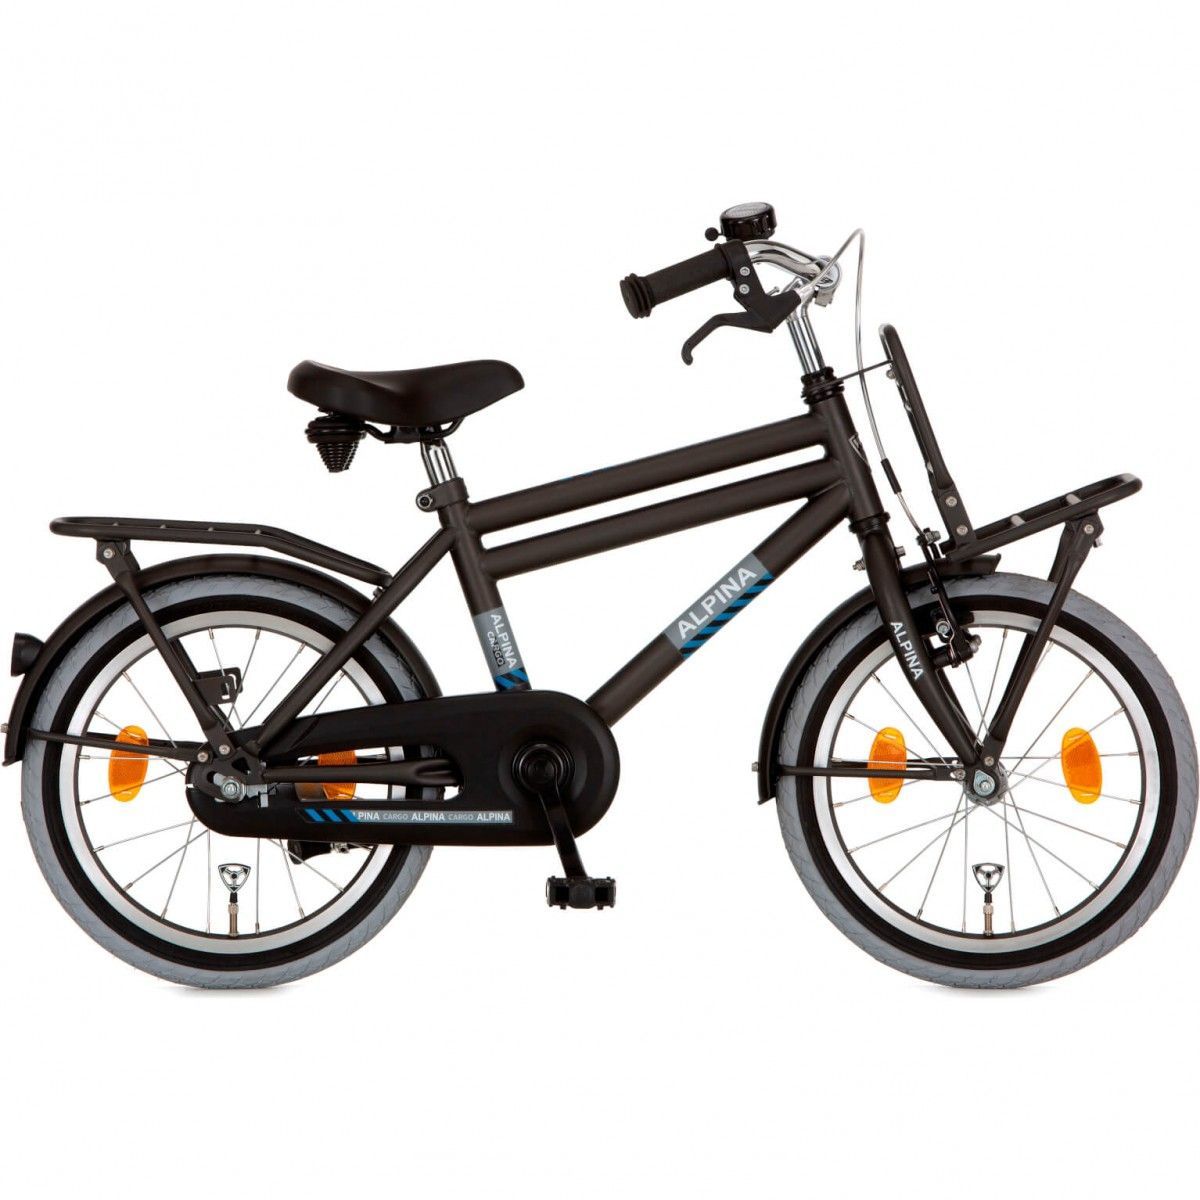 Alpina Cargo Space Black Matt (18 inch fiets) goedkoop in de webshop van Knop Tweewielers bestellen